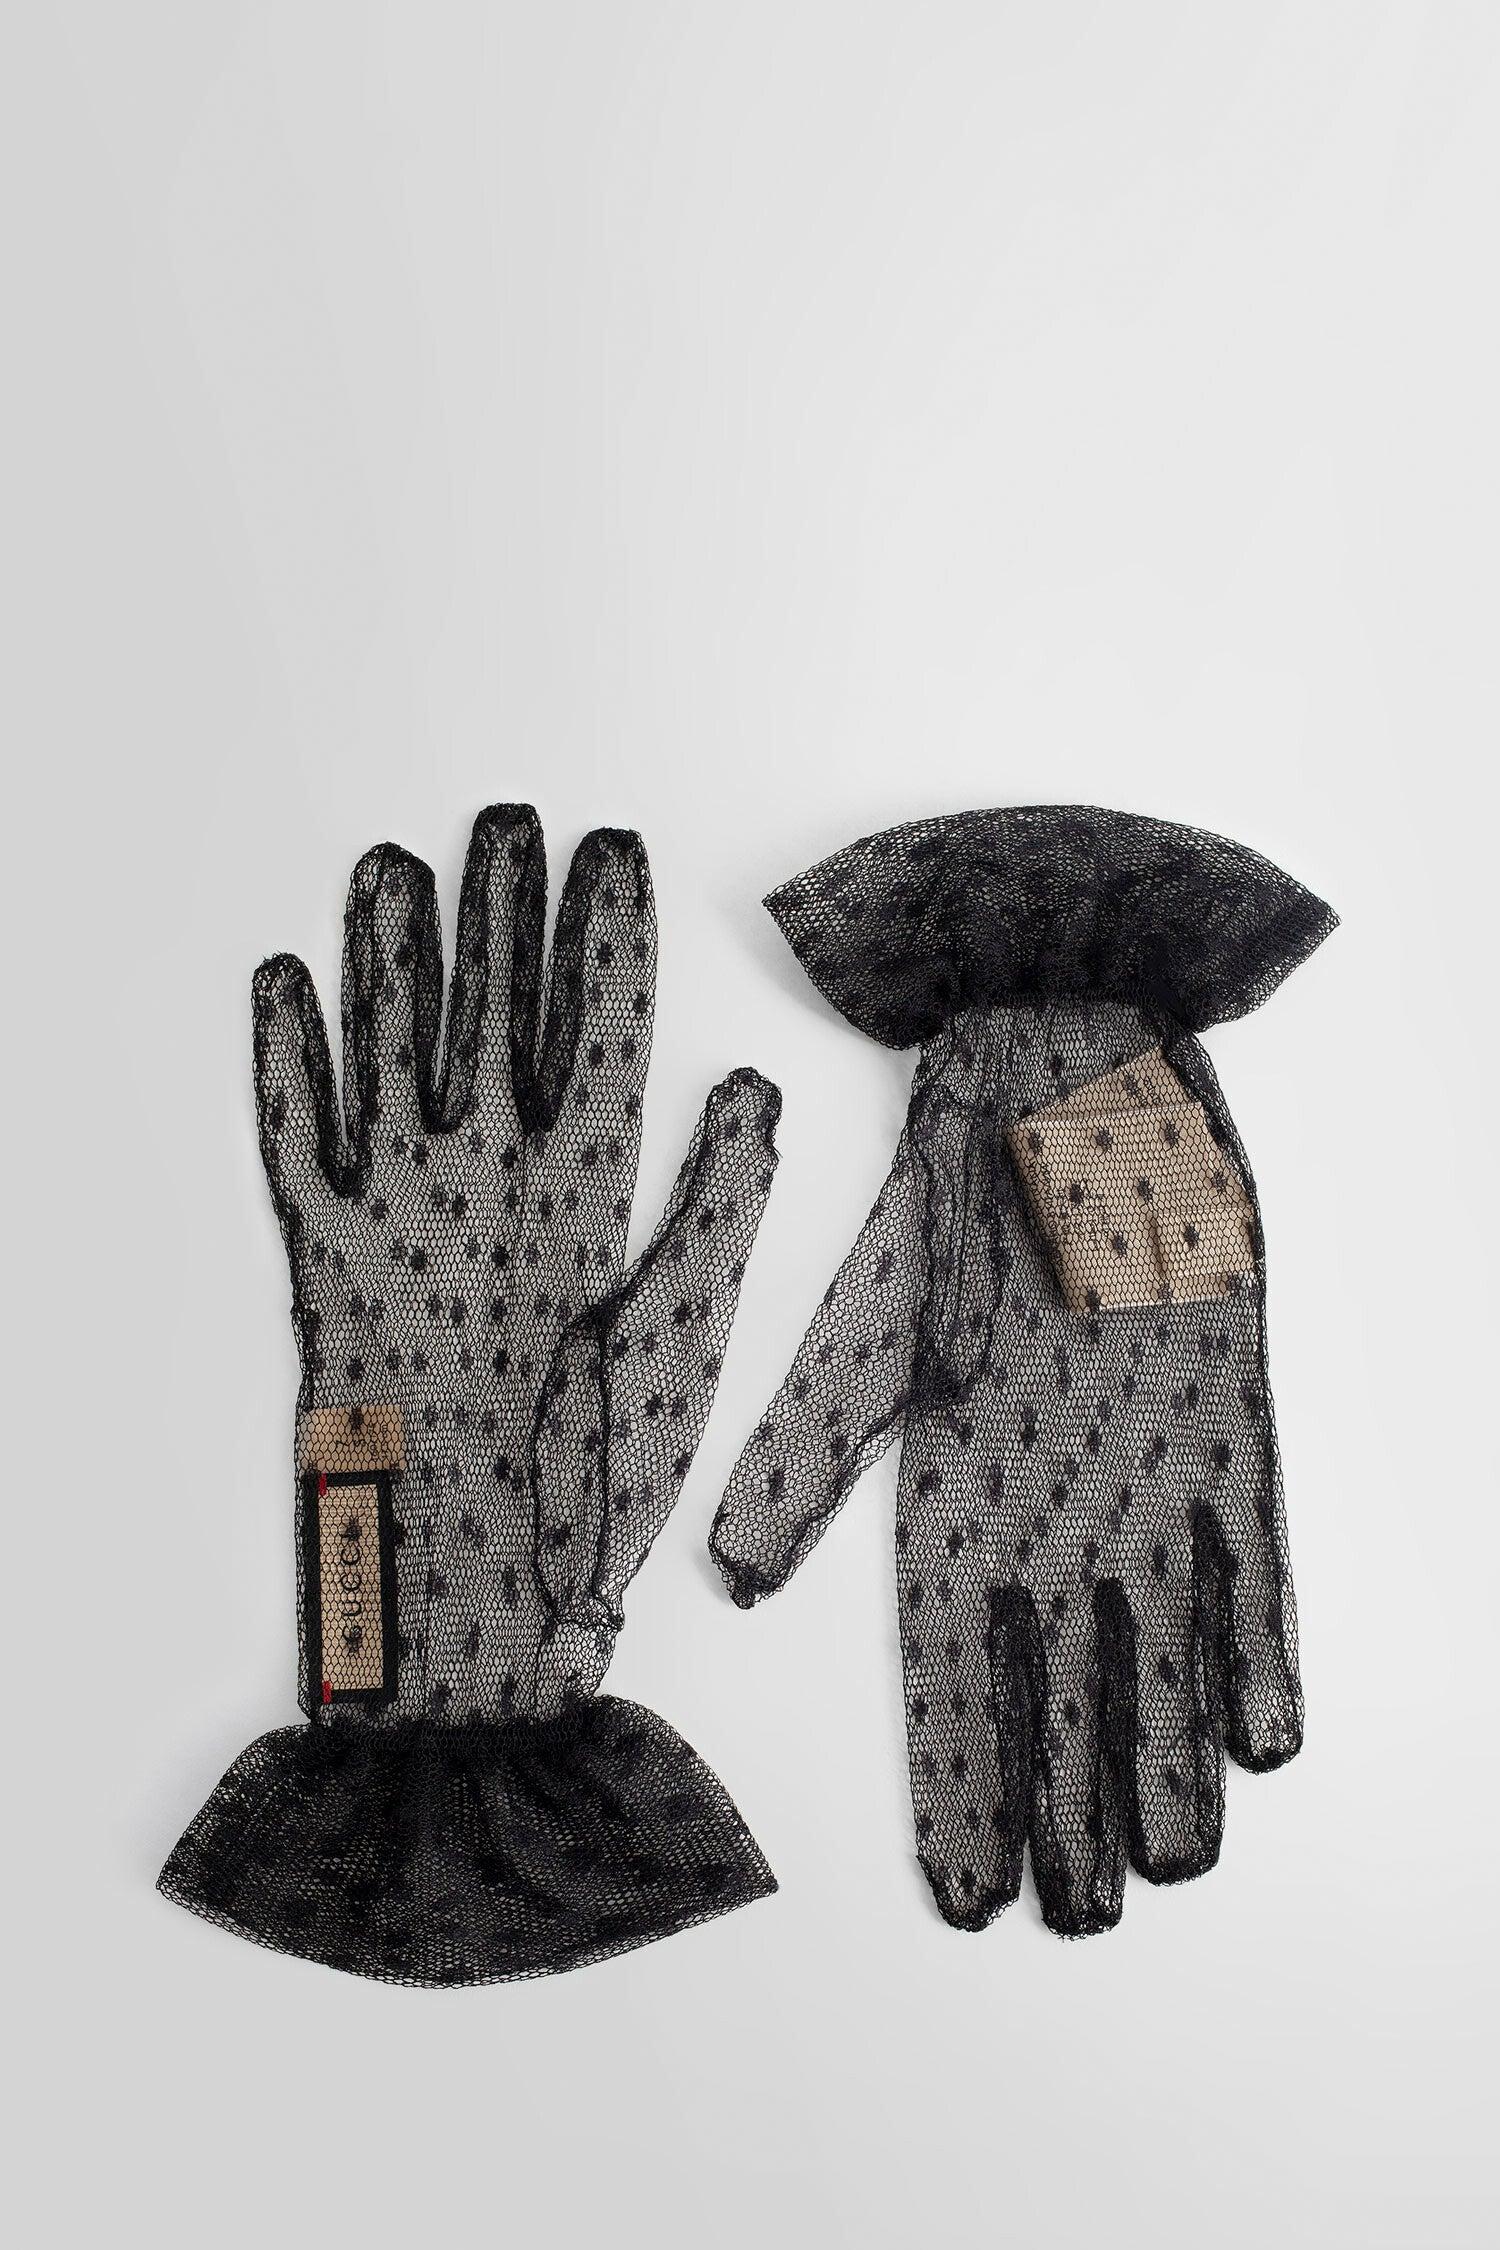 Gucci, Accessories, Gucci Black Gloves